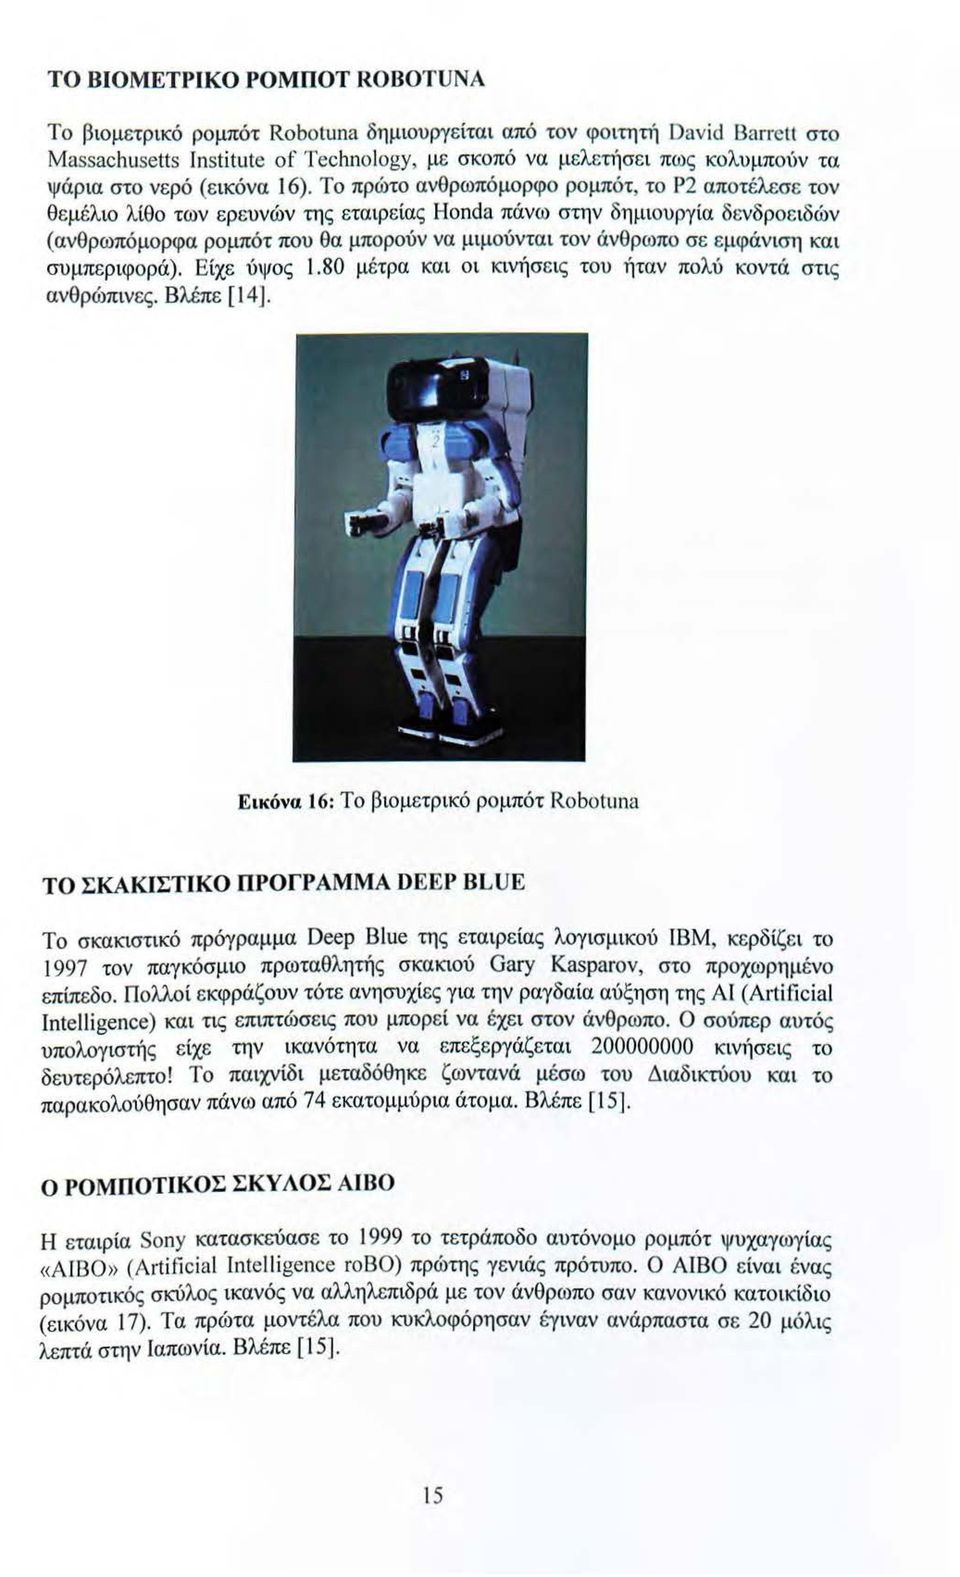 Το πρώτο ανθρωπόμορφο ρομπότ, το Ρ2 αποτέλεσε τον θεμέλιο λίθο των ερευνών της εταιρείας Honda πάνω στην δη μ ιουργία δενδροε ιδών (ανθρωπόμορφα ρομπότ που θα μπορούν να μιμούντα ι τον άνθρωπο σε